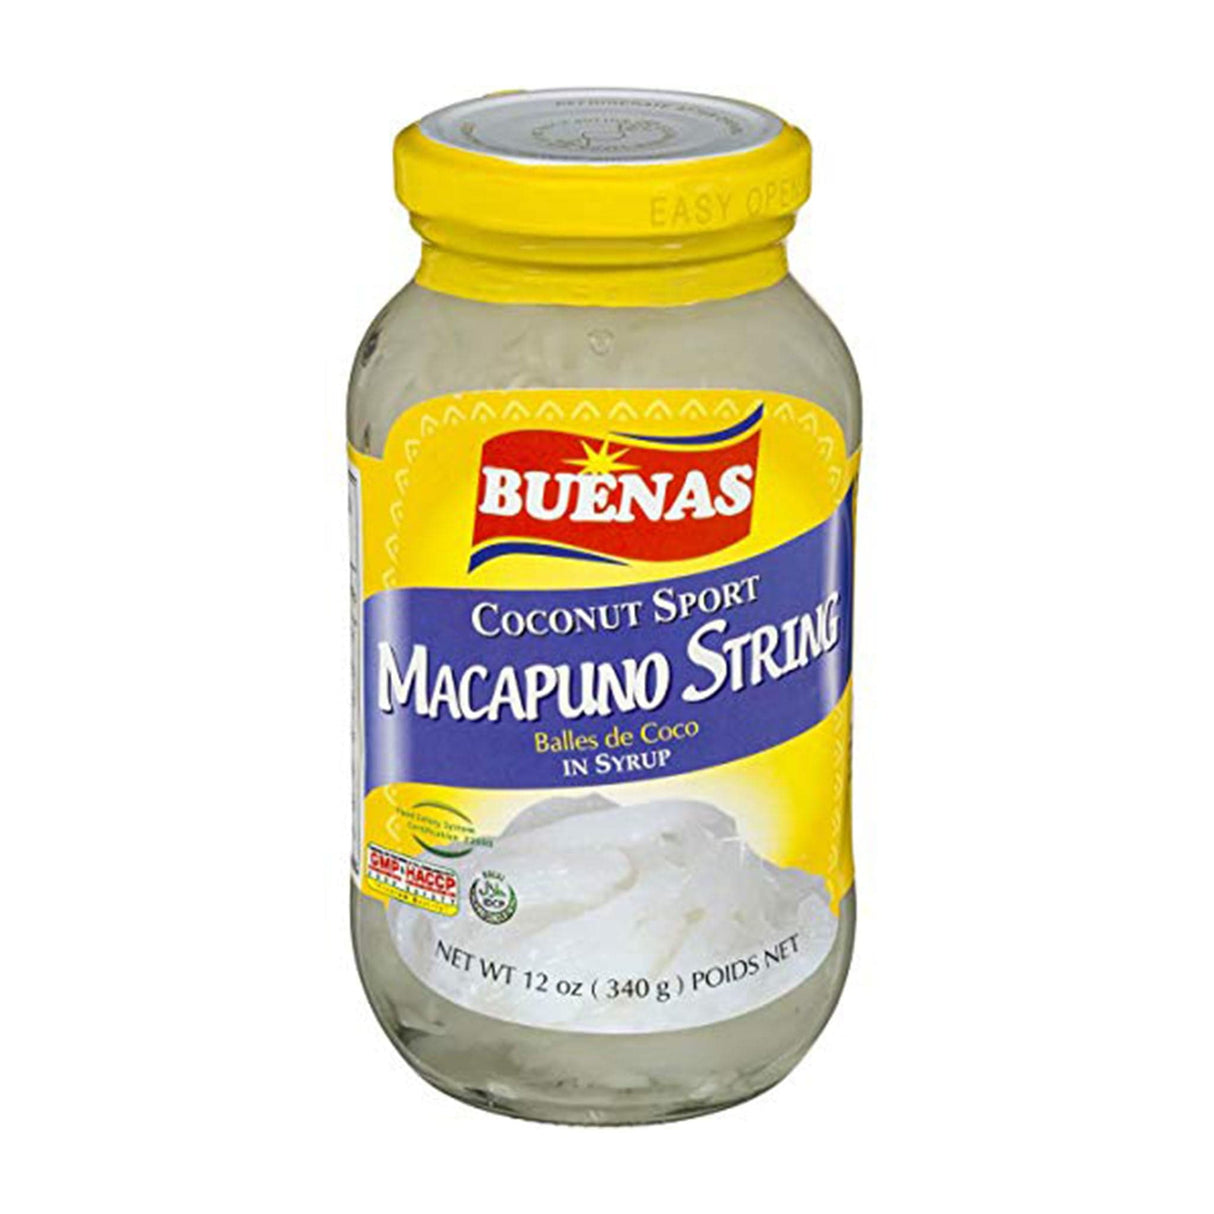 Buenas Coconut Sport Macapuno String in Syrup